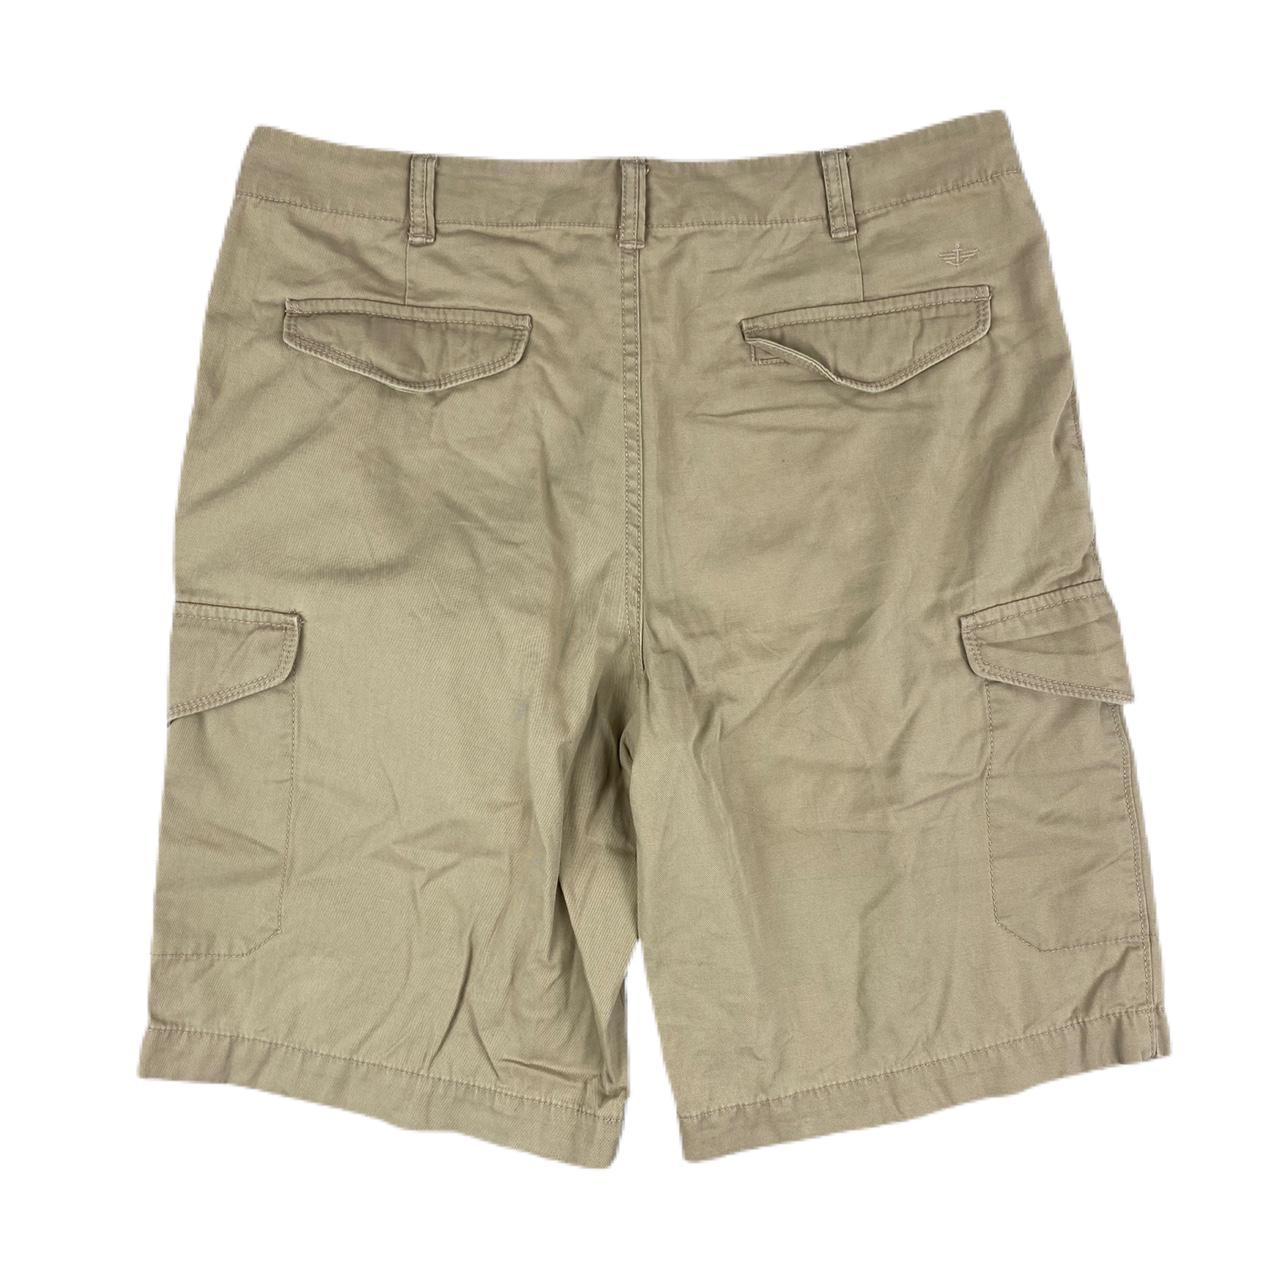 Vintage Dockers beige cargo workwear shorts. In... - Depop